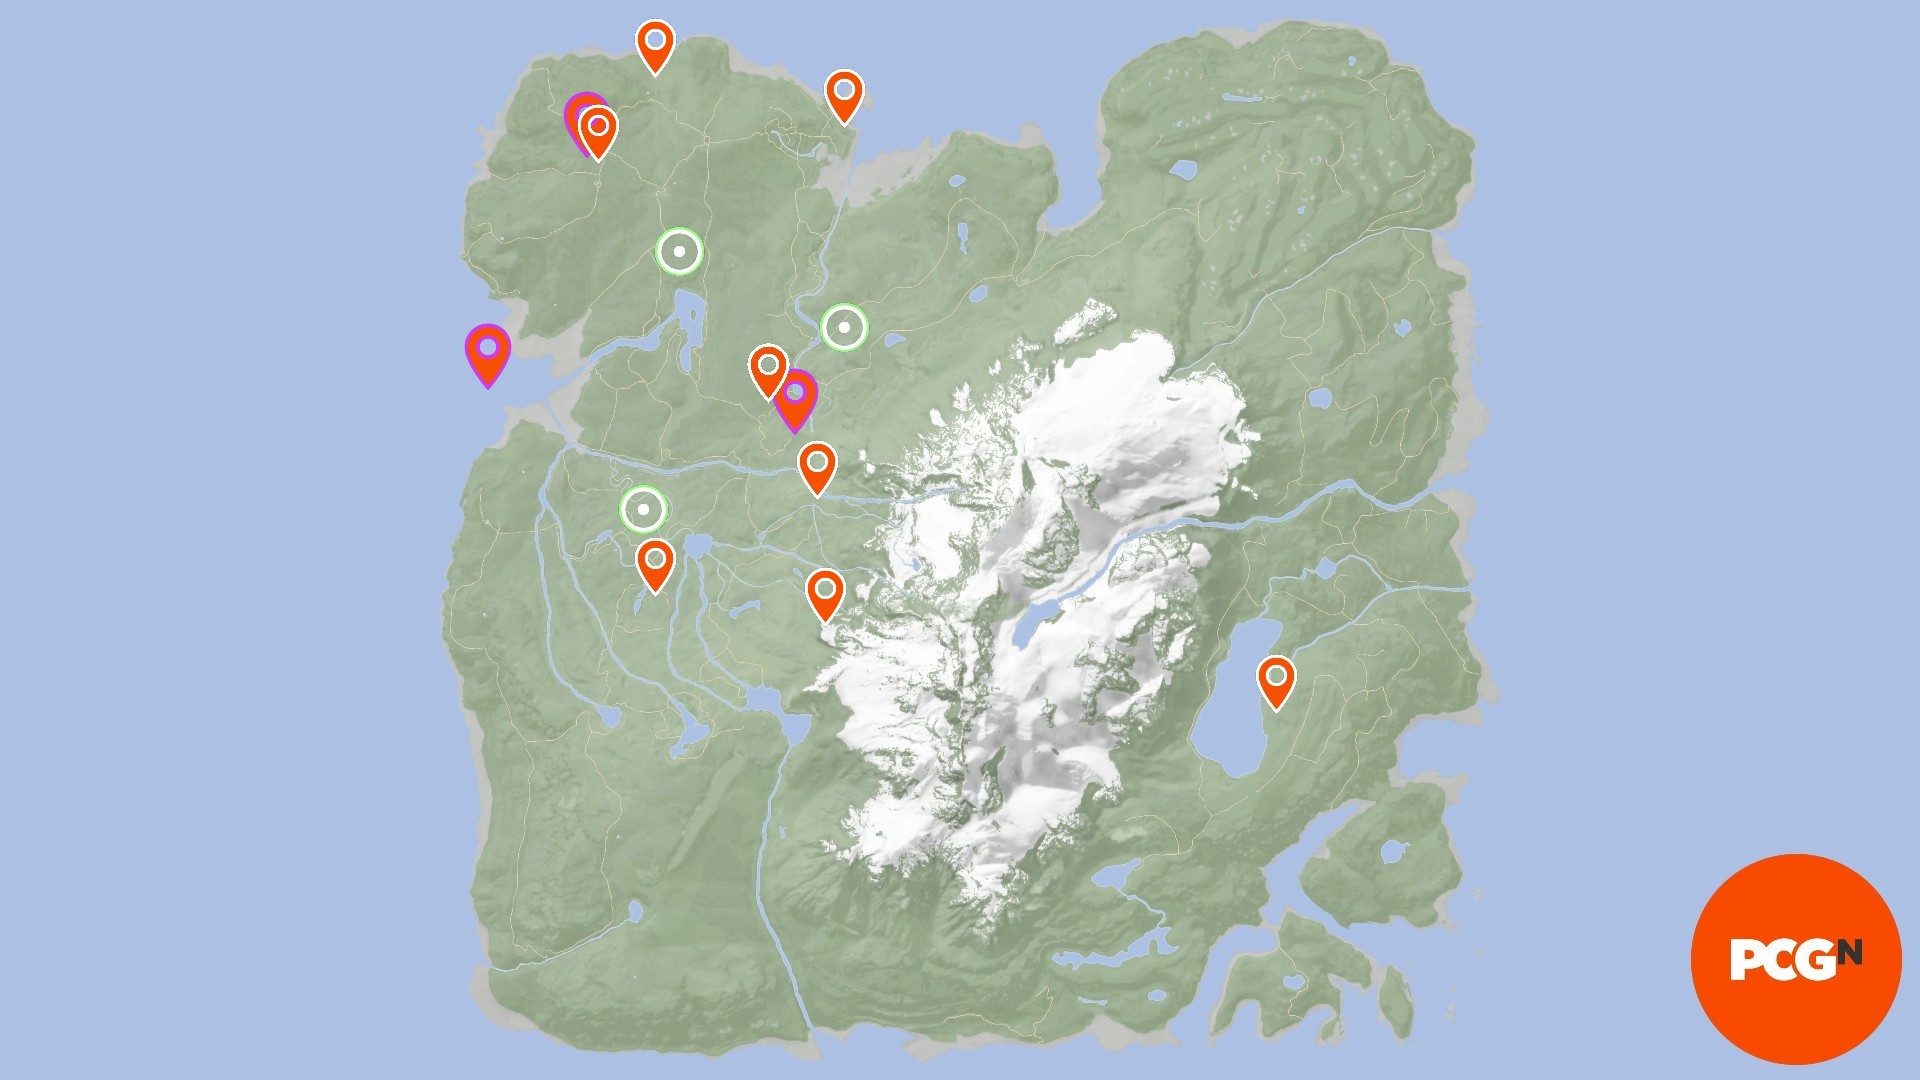 Fils de la carte forestière: divers emplacements d'articles sont marqués sur la carte avec différentes icônes pour les outils, les localisateurs GPS et les POI